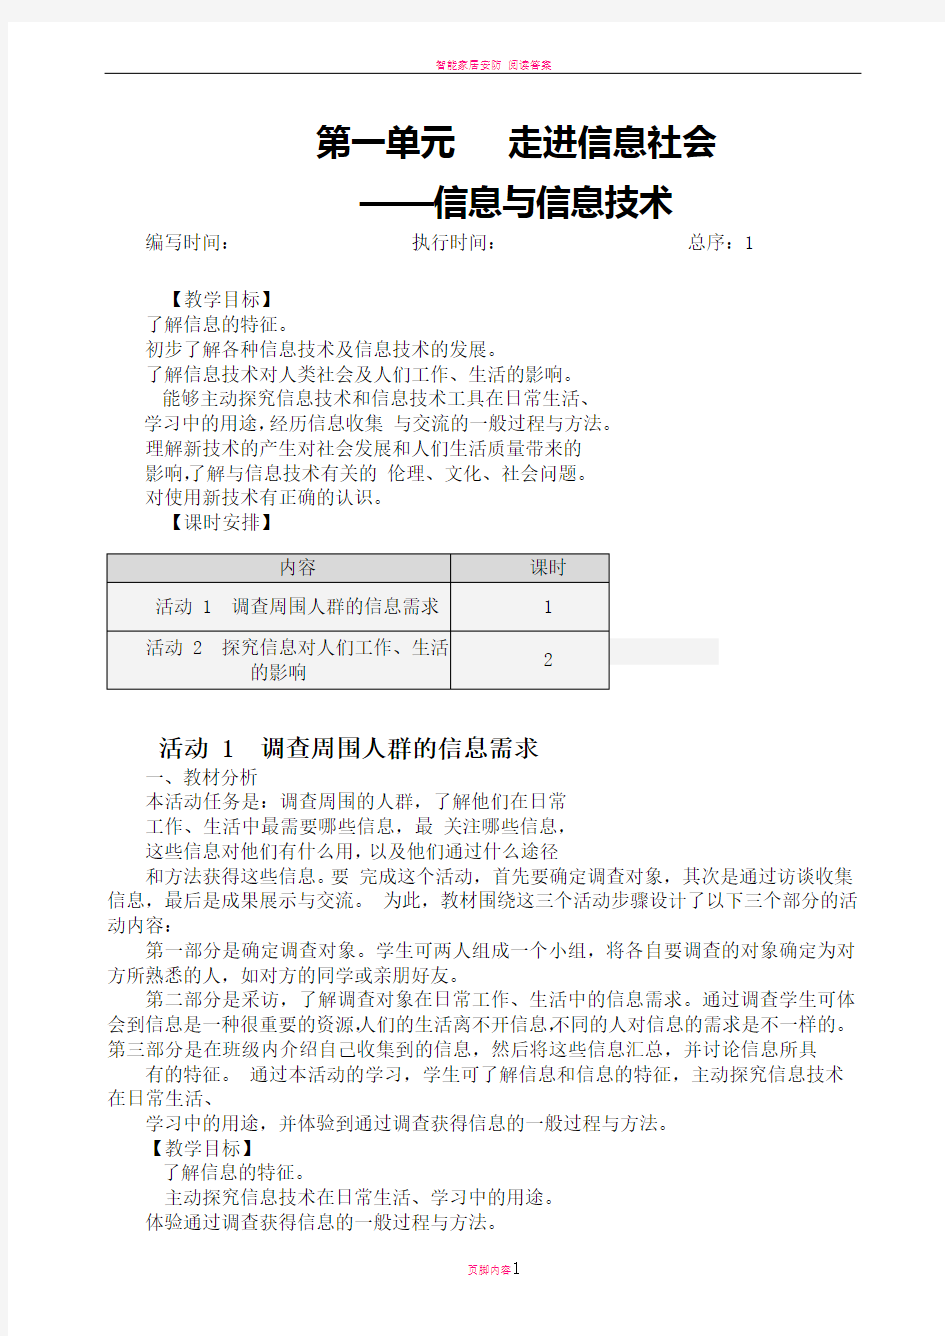 初中七年级上册信息技术教案-(上海科教版)